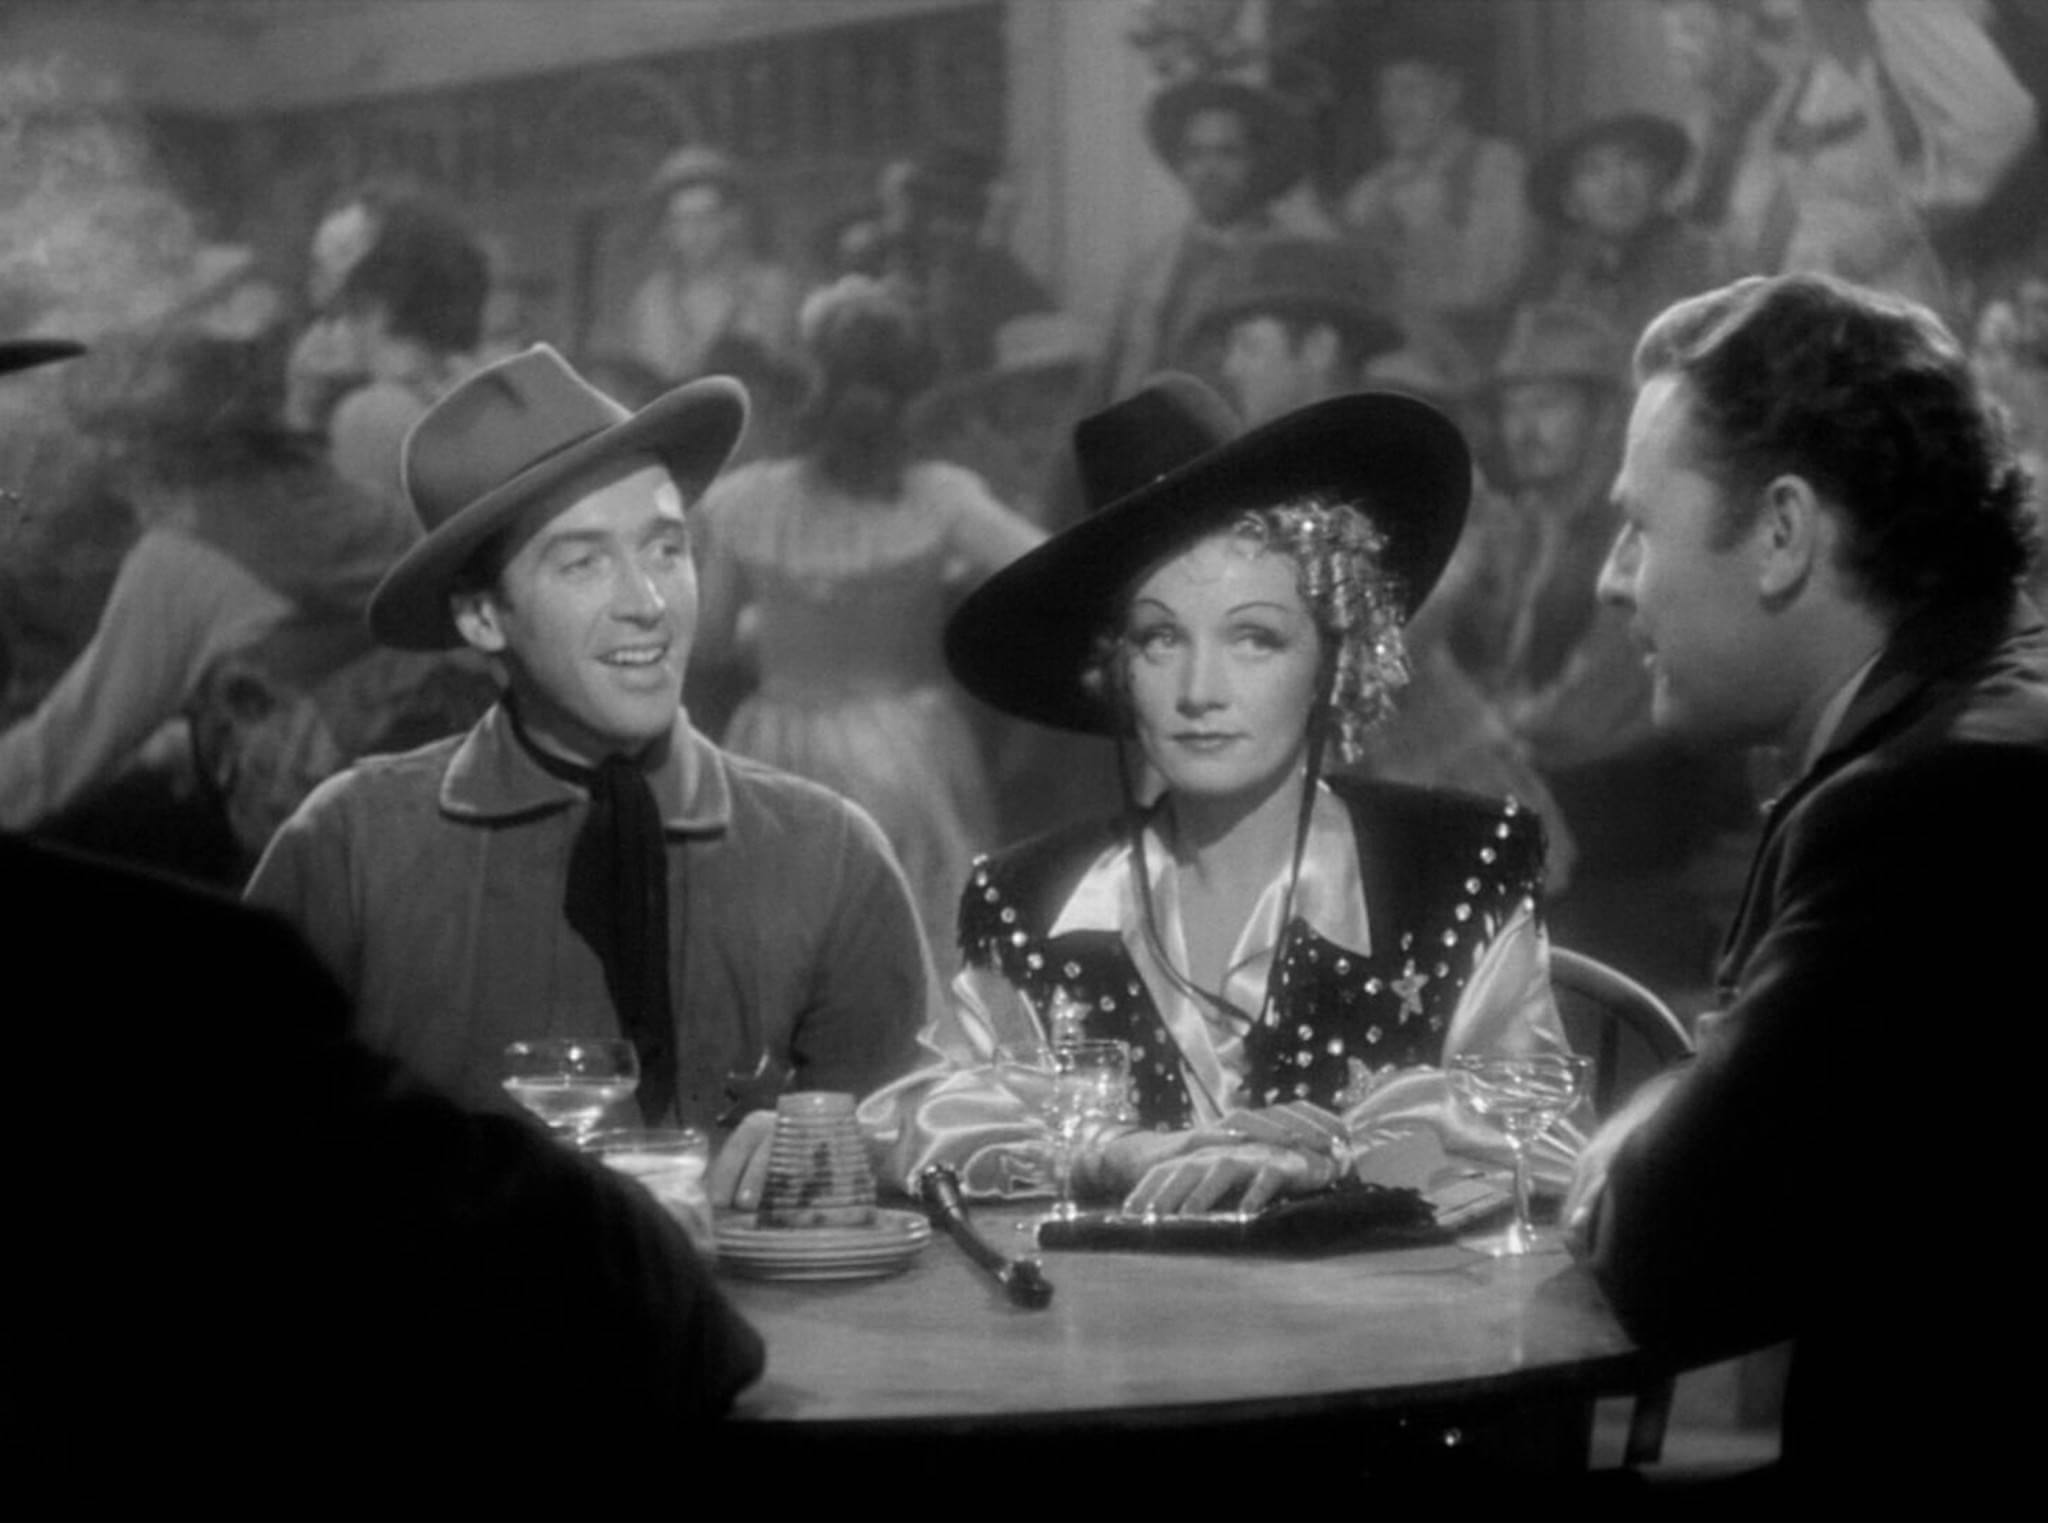 Jimmy-Stewart-Marlene-Dietrich-Destry-Rides-Again-1939-movie